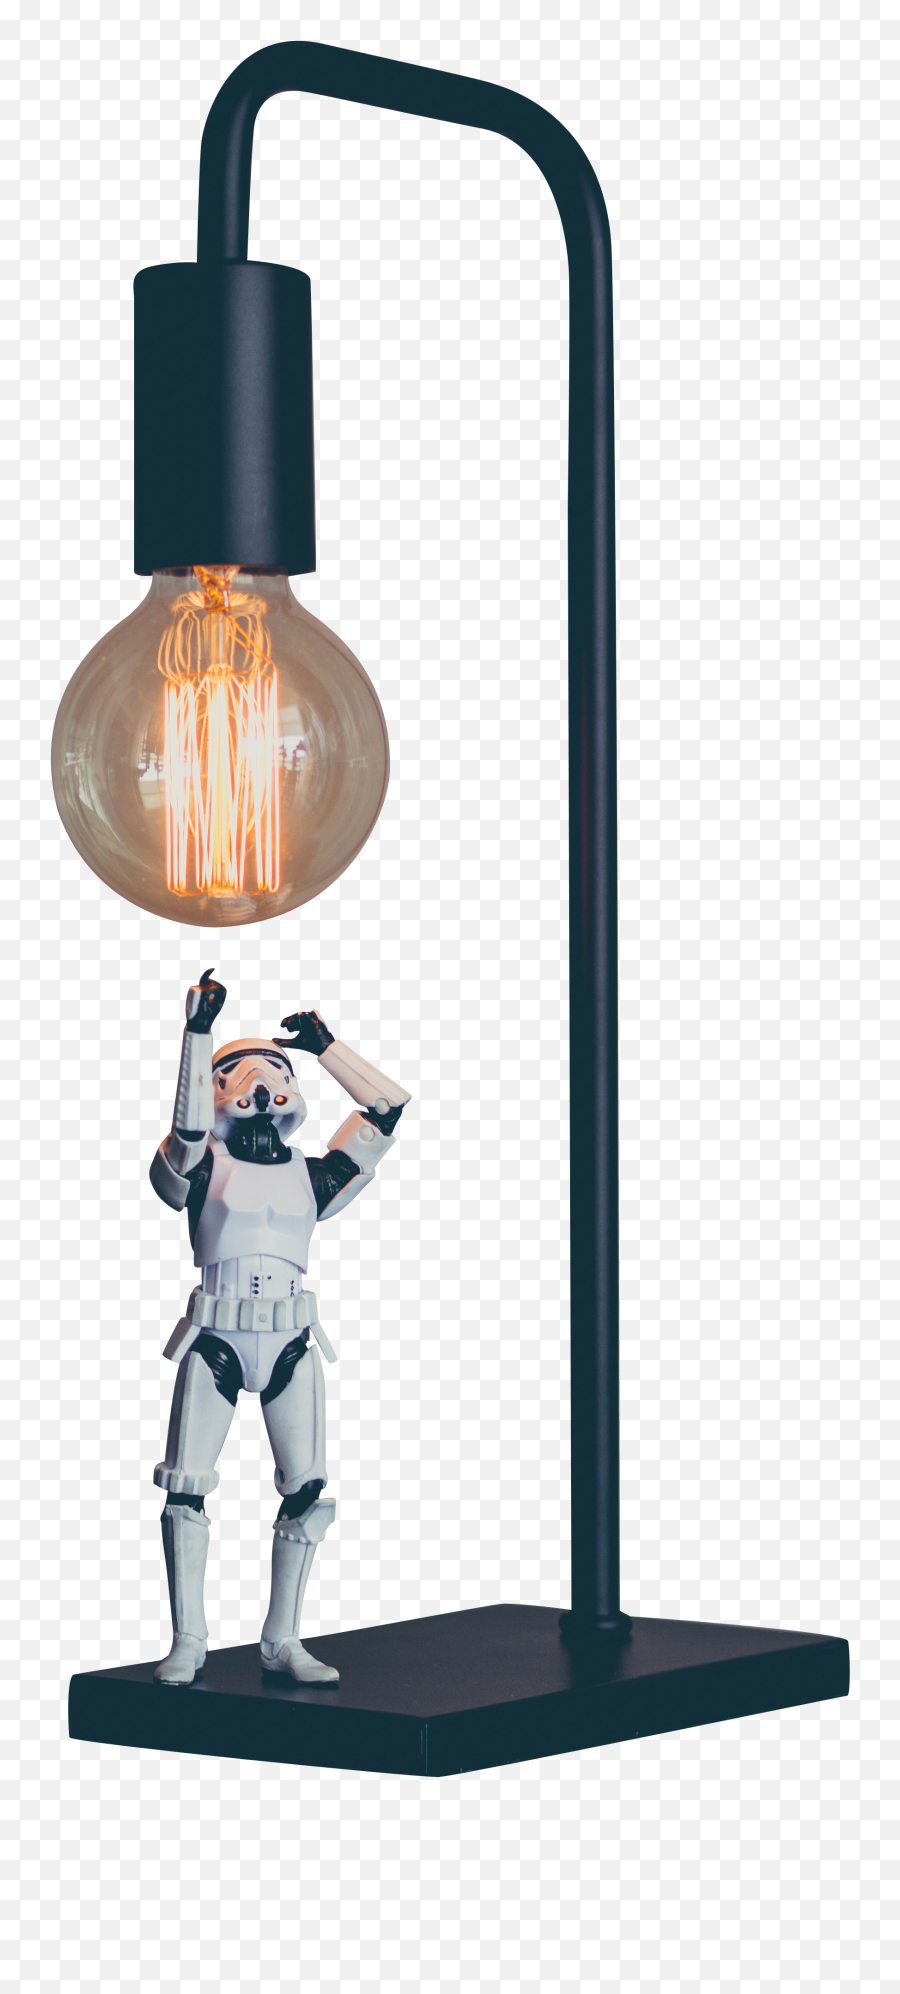 Storm Trooper Under Lamp Transparent Background Png - Free Incandescent Light Bulb,Lightbulb Transparent Background